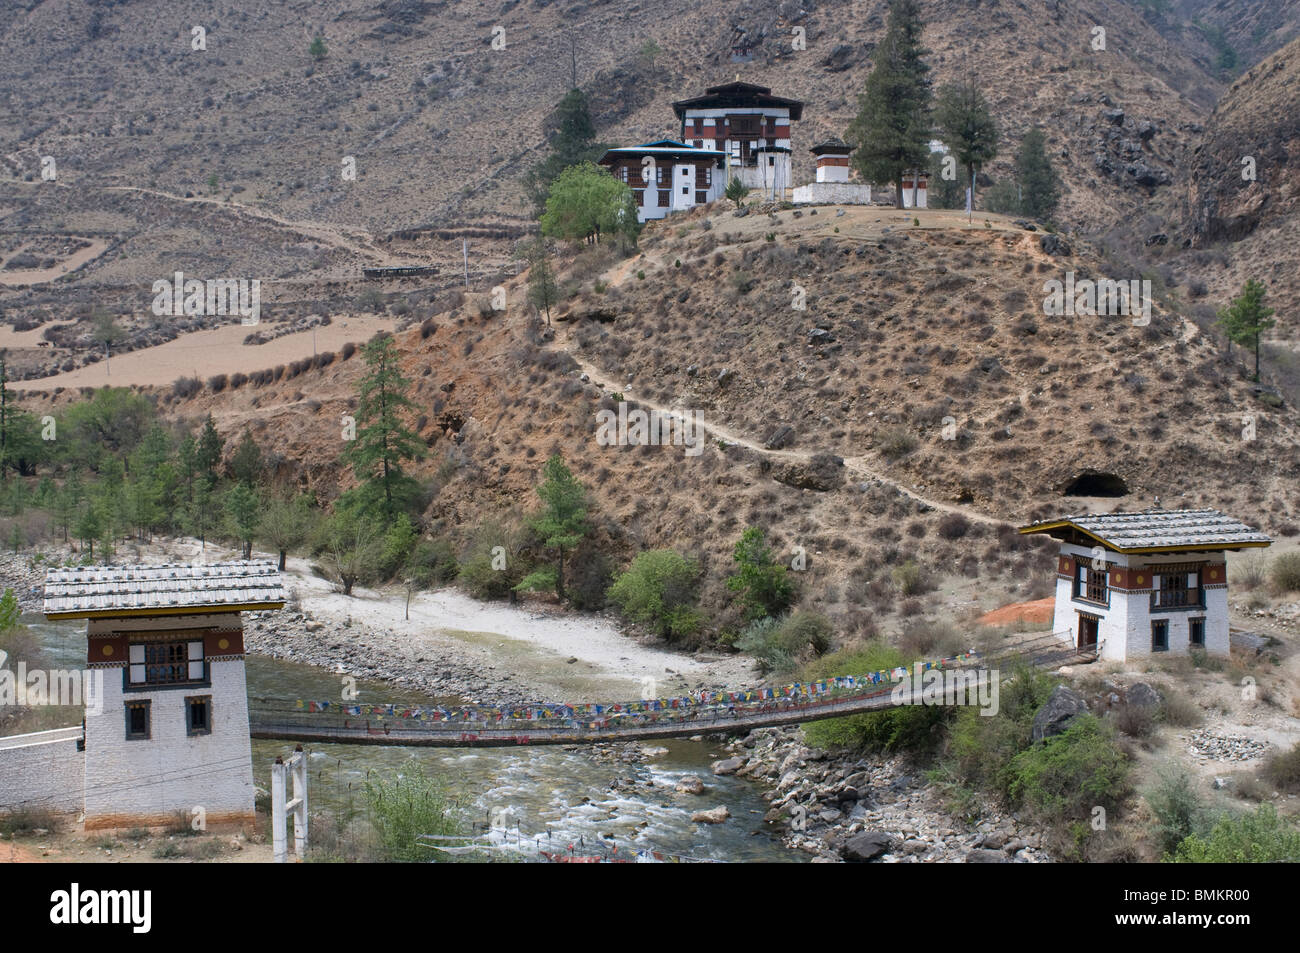 Pont de fer, à l'Thamchhog monastère Lhakhang, Bhoutan, Asie Banque D'Images